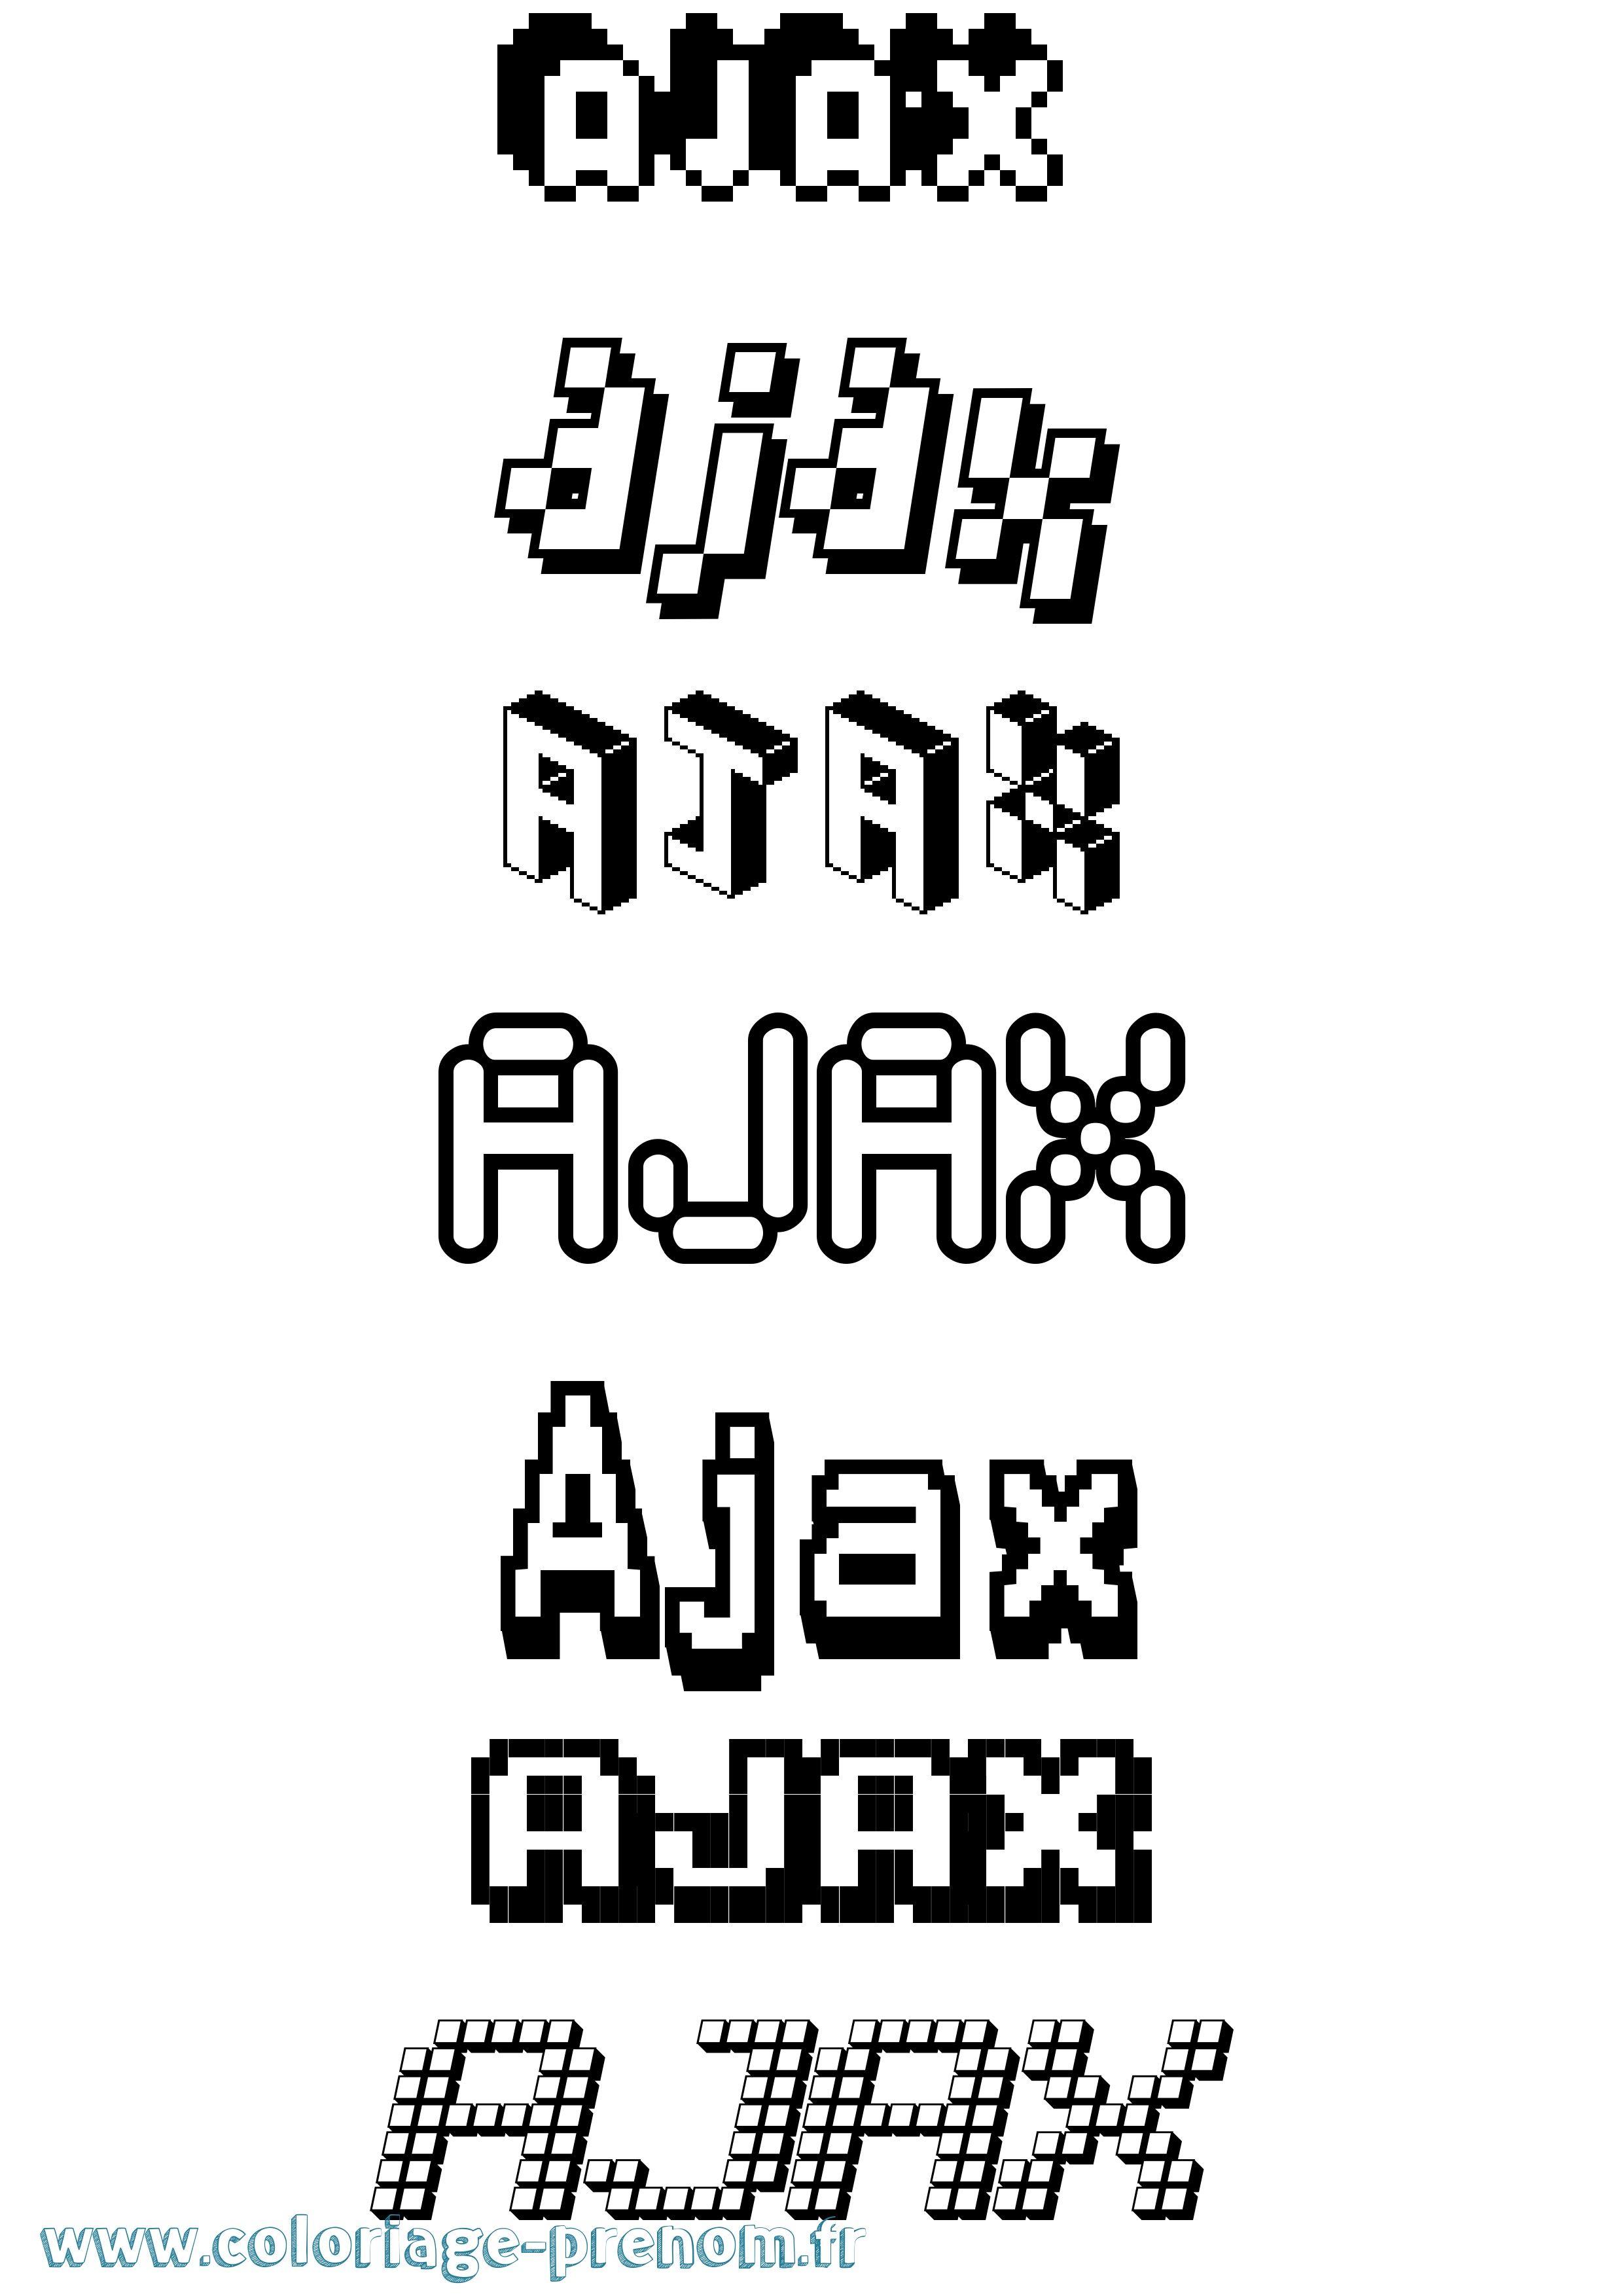 Coloriage prénom Ajax Pixel